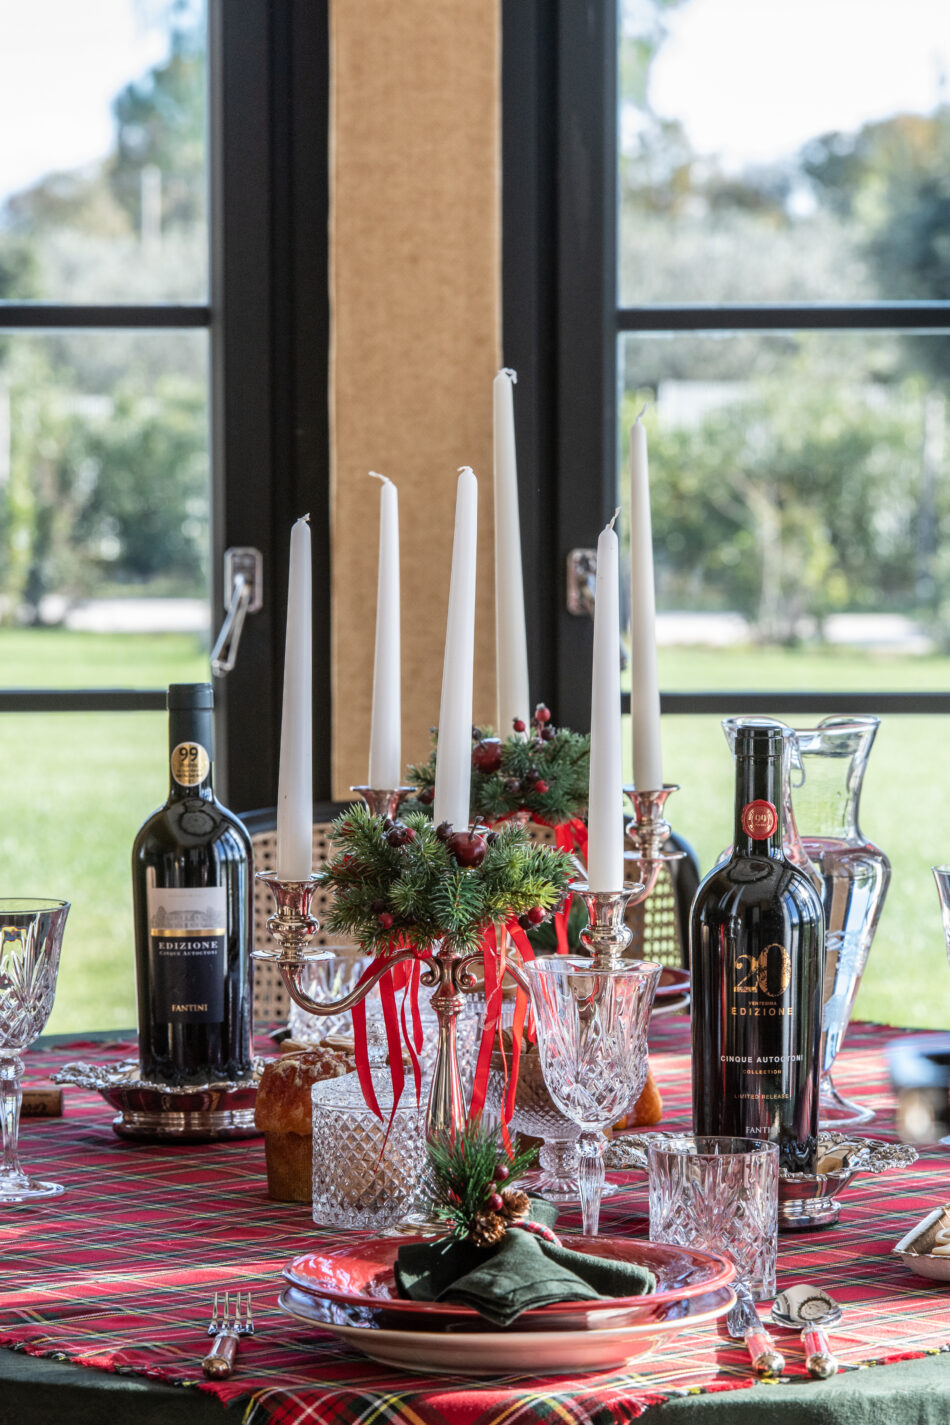 Natale 2022: i vini da portare sulla tavola delle feste - Sapori News 